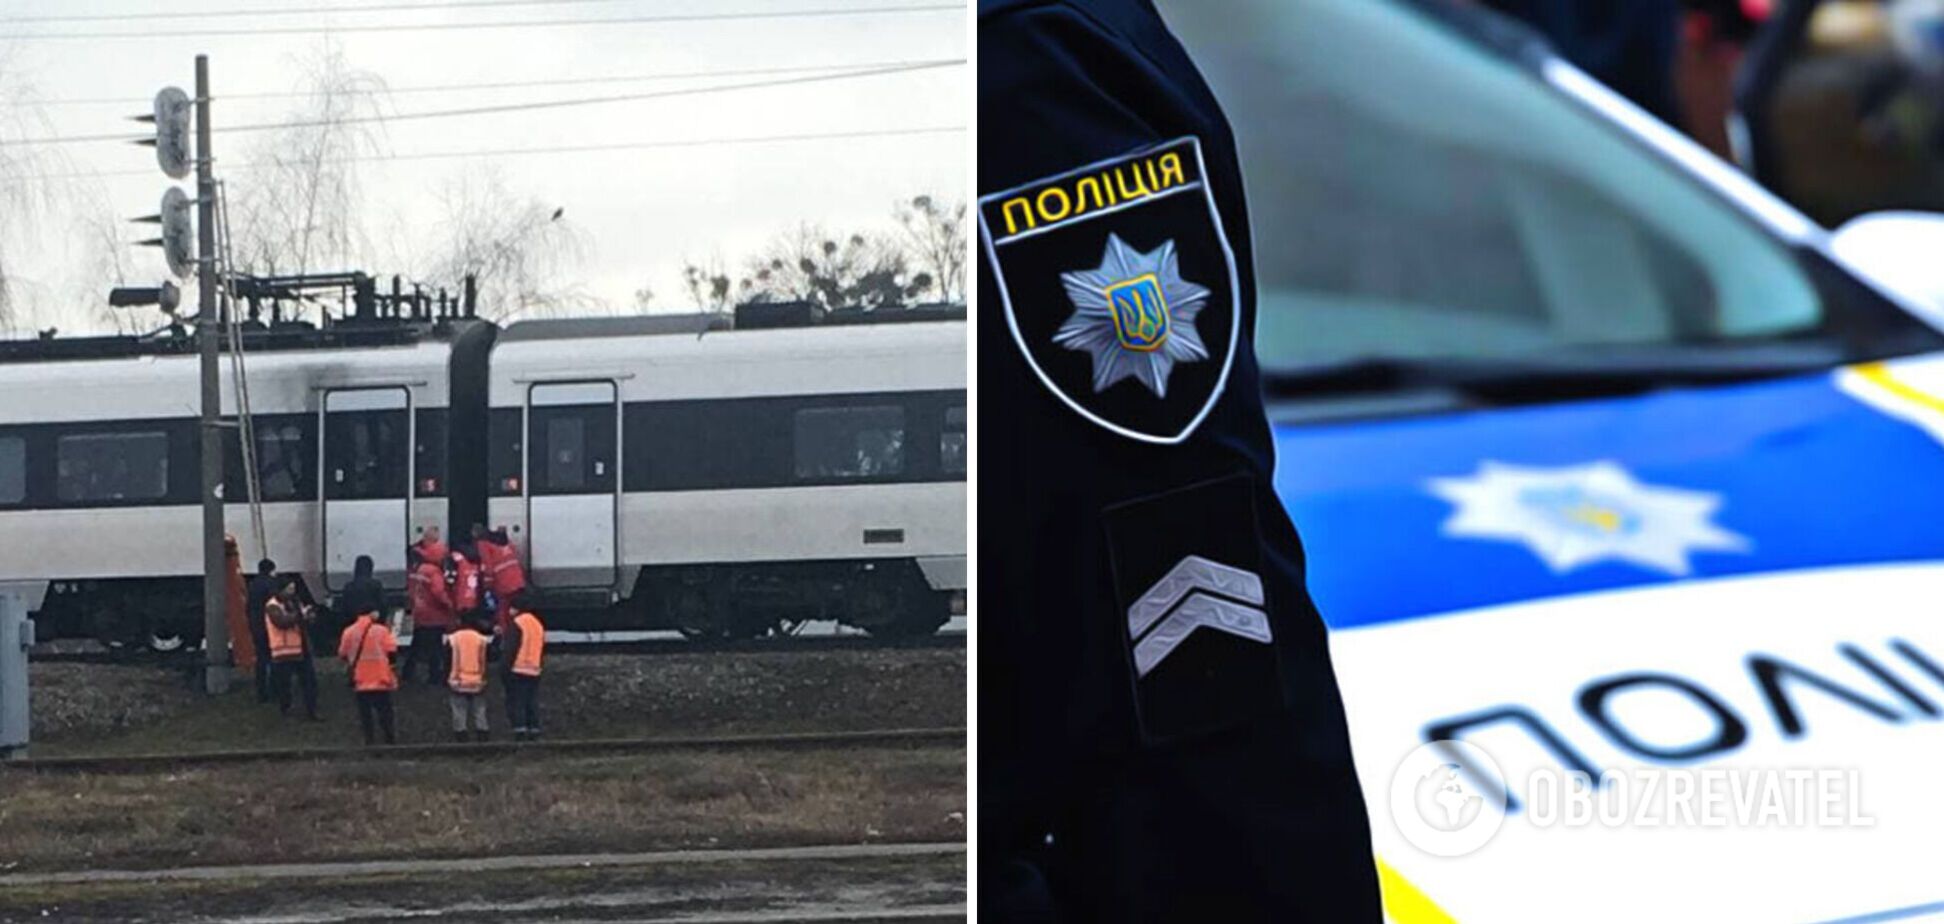 На Полтавщині жінка потрапила під потяг, урятувати її не вдалося. Фото та деталі трагедії